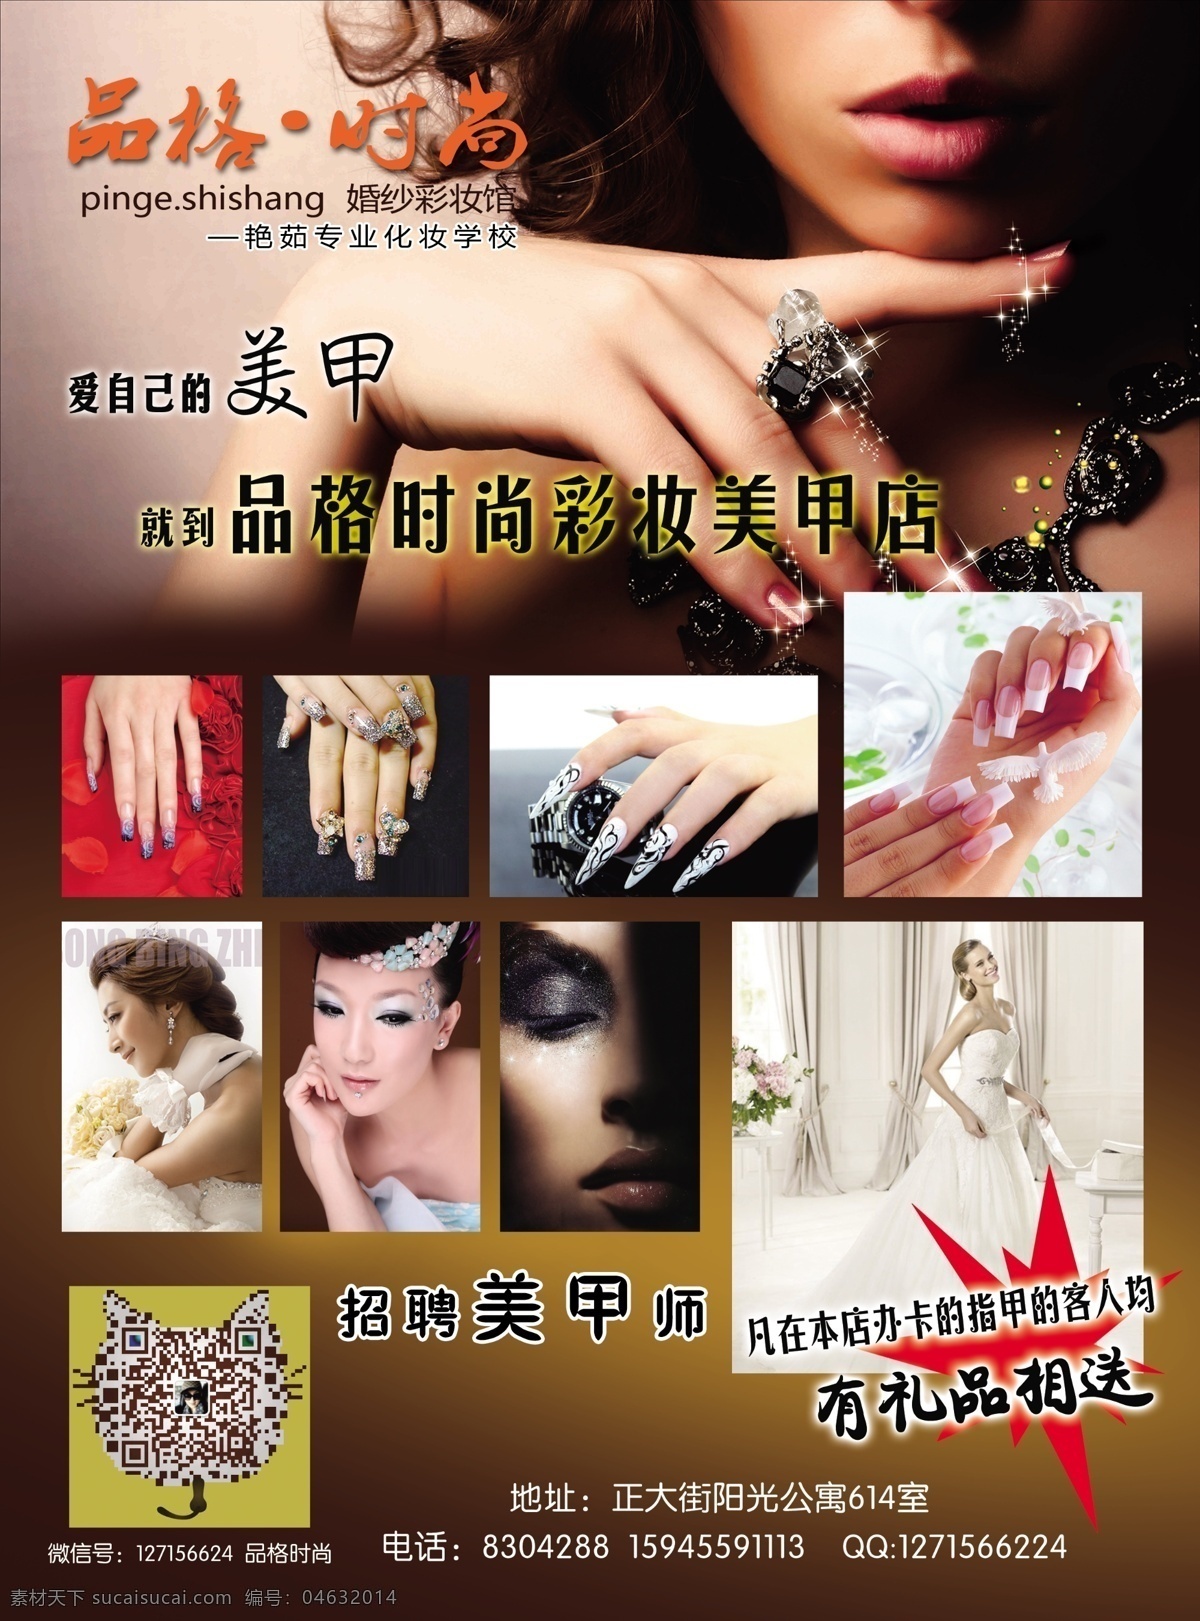 彩妆 广告设计模板 婚纱 美甲 美容 源文件 品格 时尚 模板下载 宣传海报 宣传单 彩页 dm